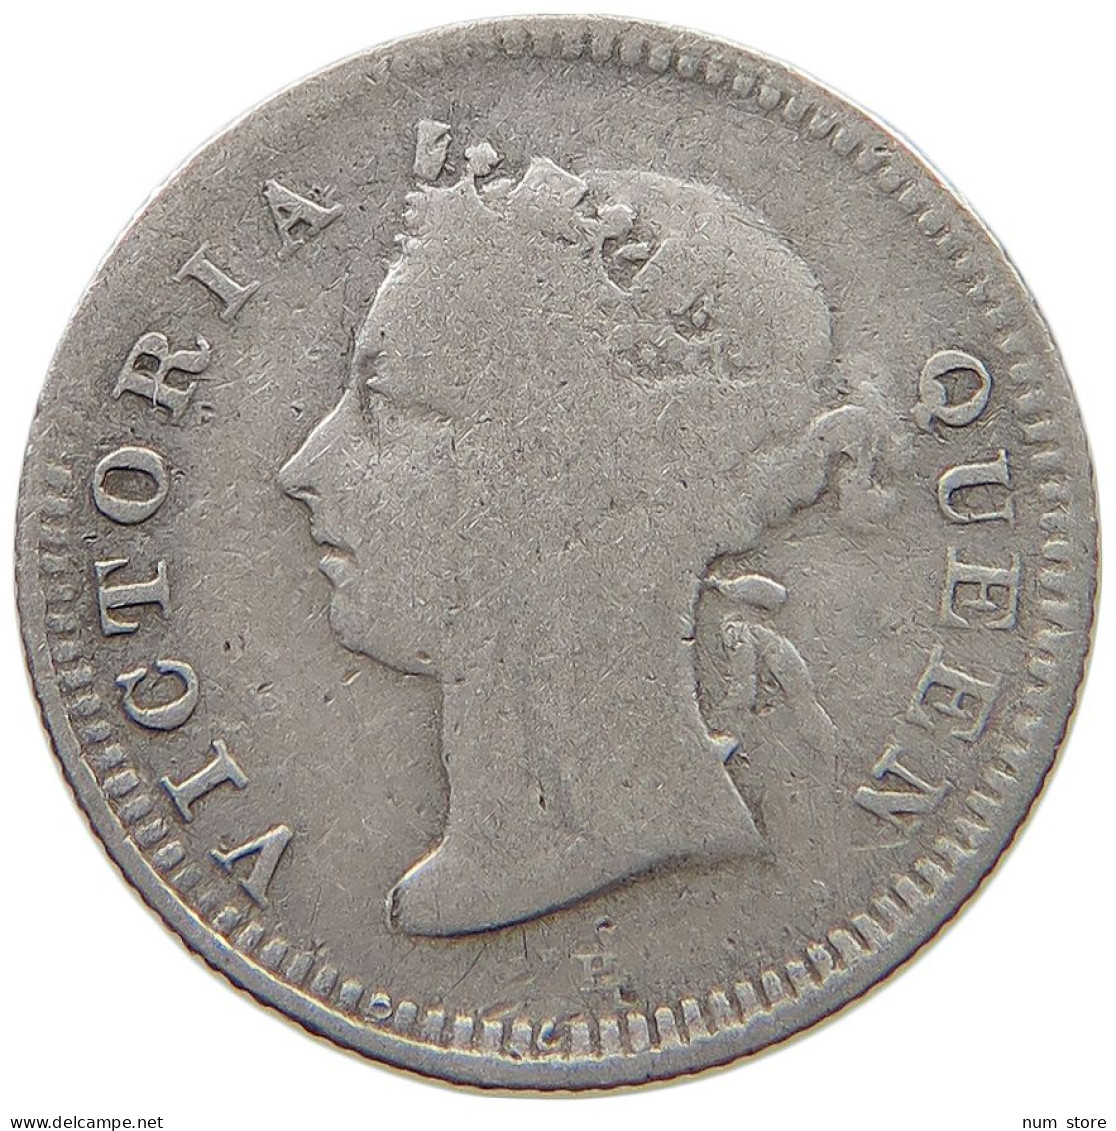 MAURITIUS 10 CENTS 1889 Victoria 1837-1901 #t111 1355 - Mauritius